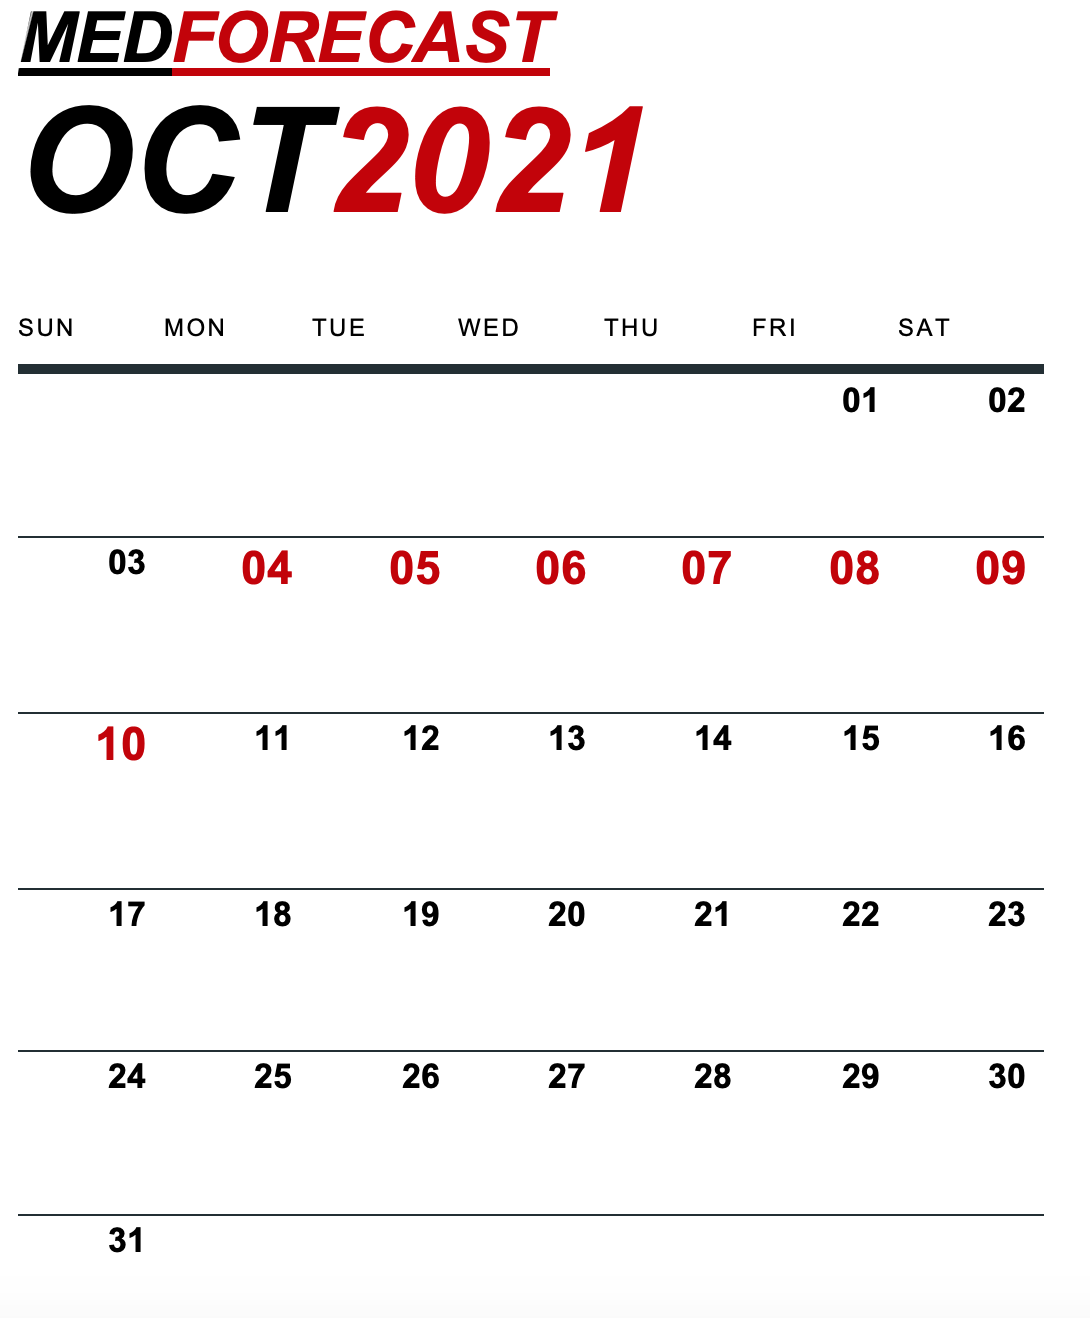 Medical News Forecast for October 4-10